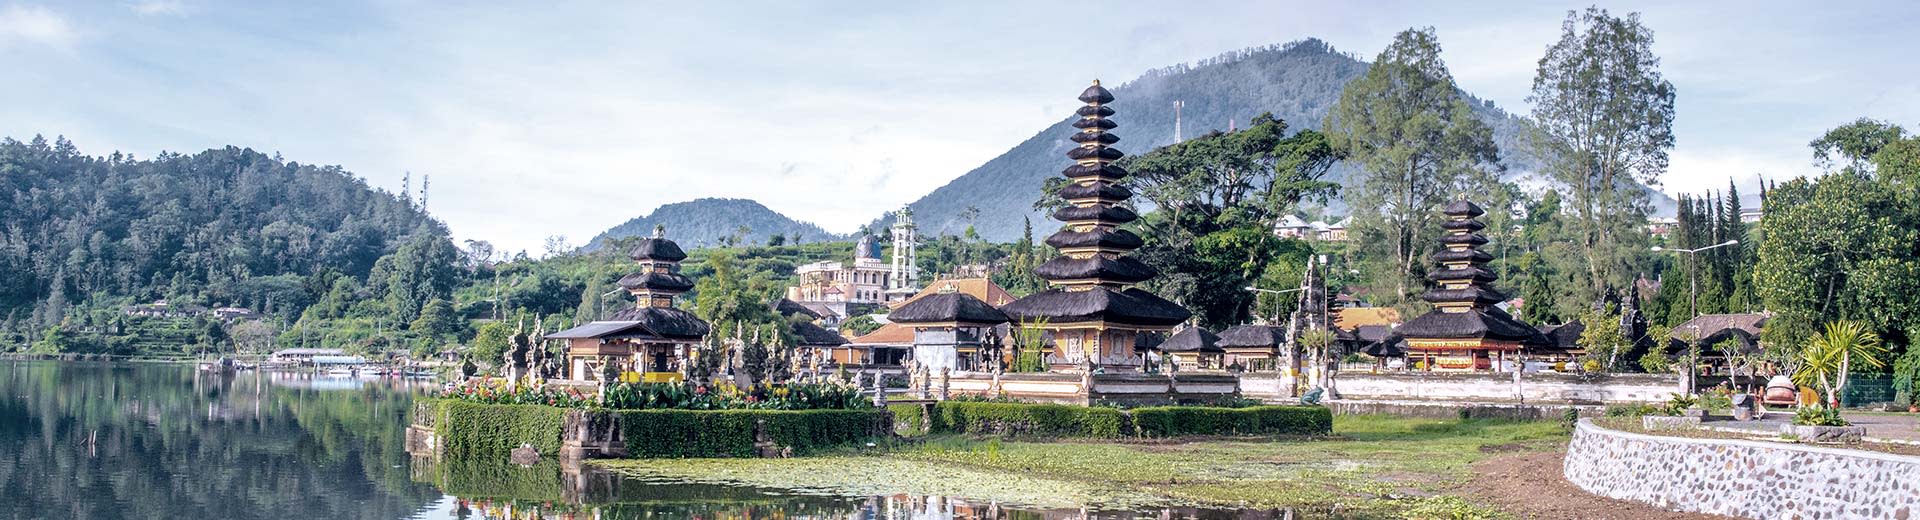 巴厘岛的 Ulun Danu Beratan 寺，旁边是平静的 Beratan 湖，背景是群山。